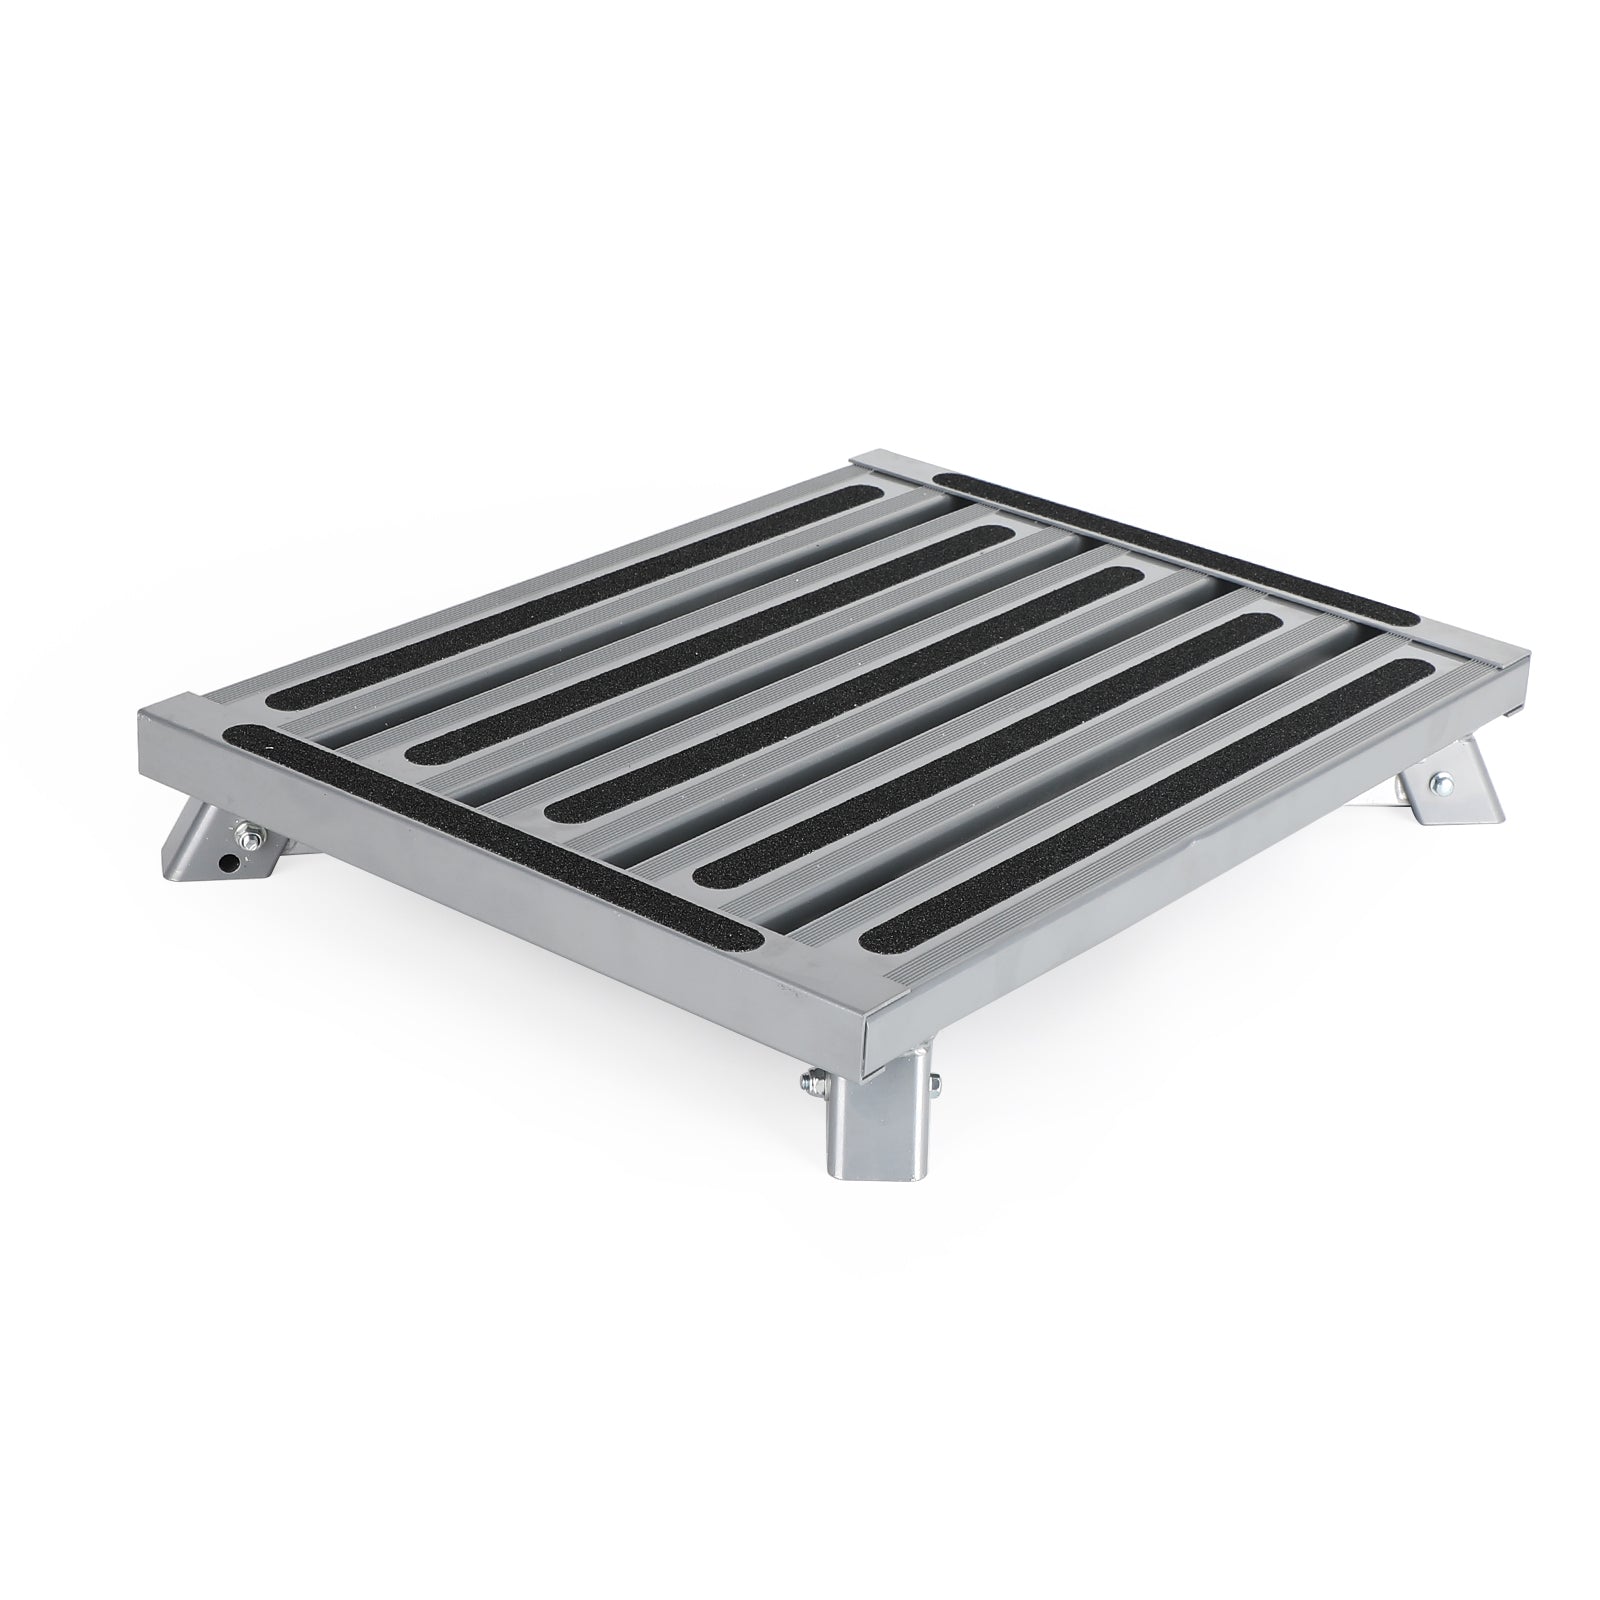 Plataforma de aluminio plegable RV Escalera de tijera Remolque Camper Escalera de trabajo portátil